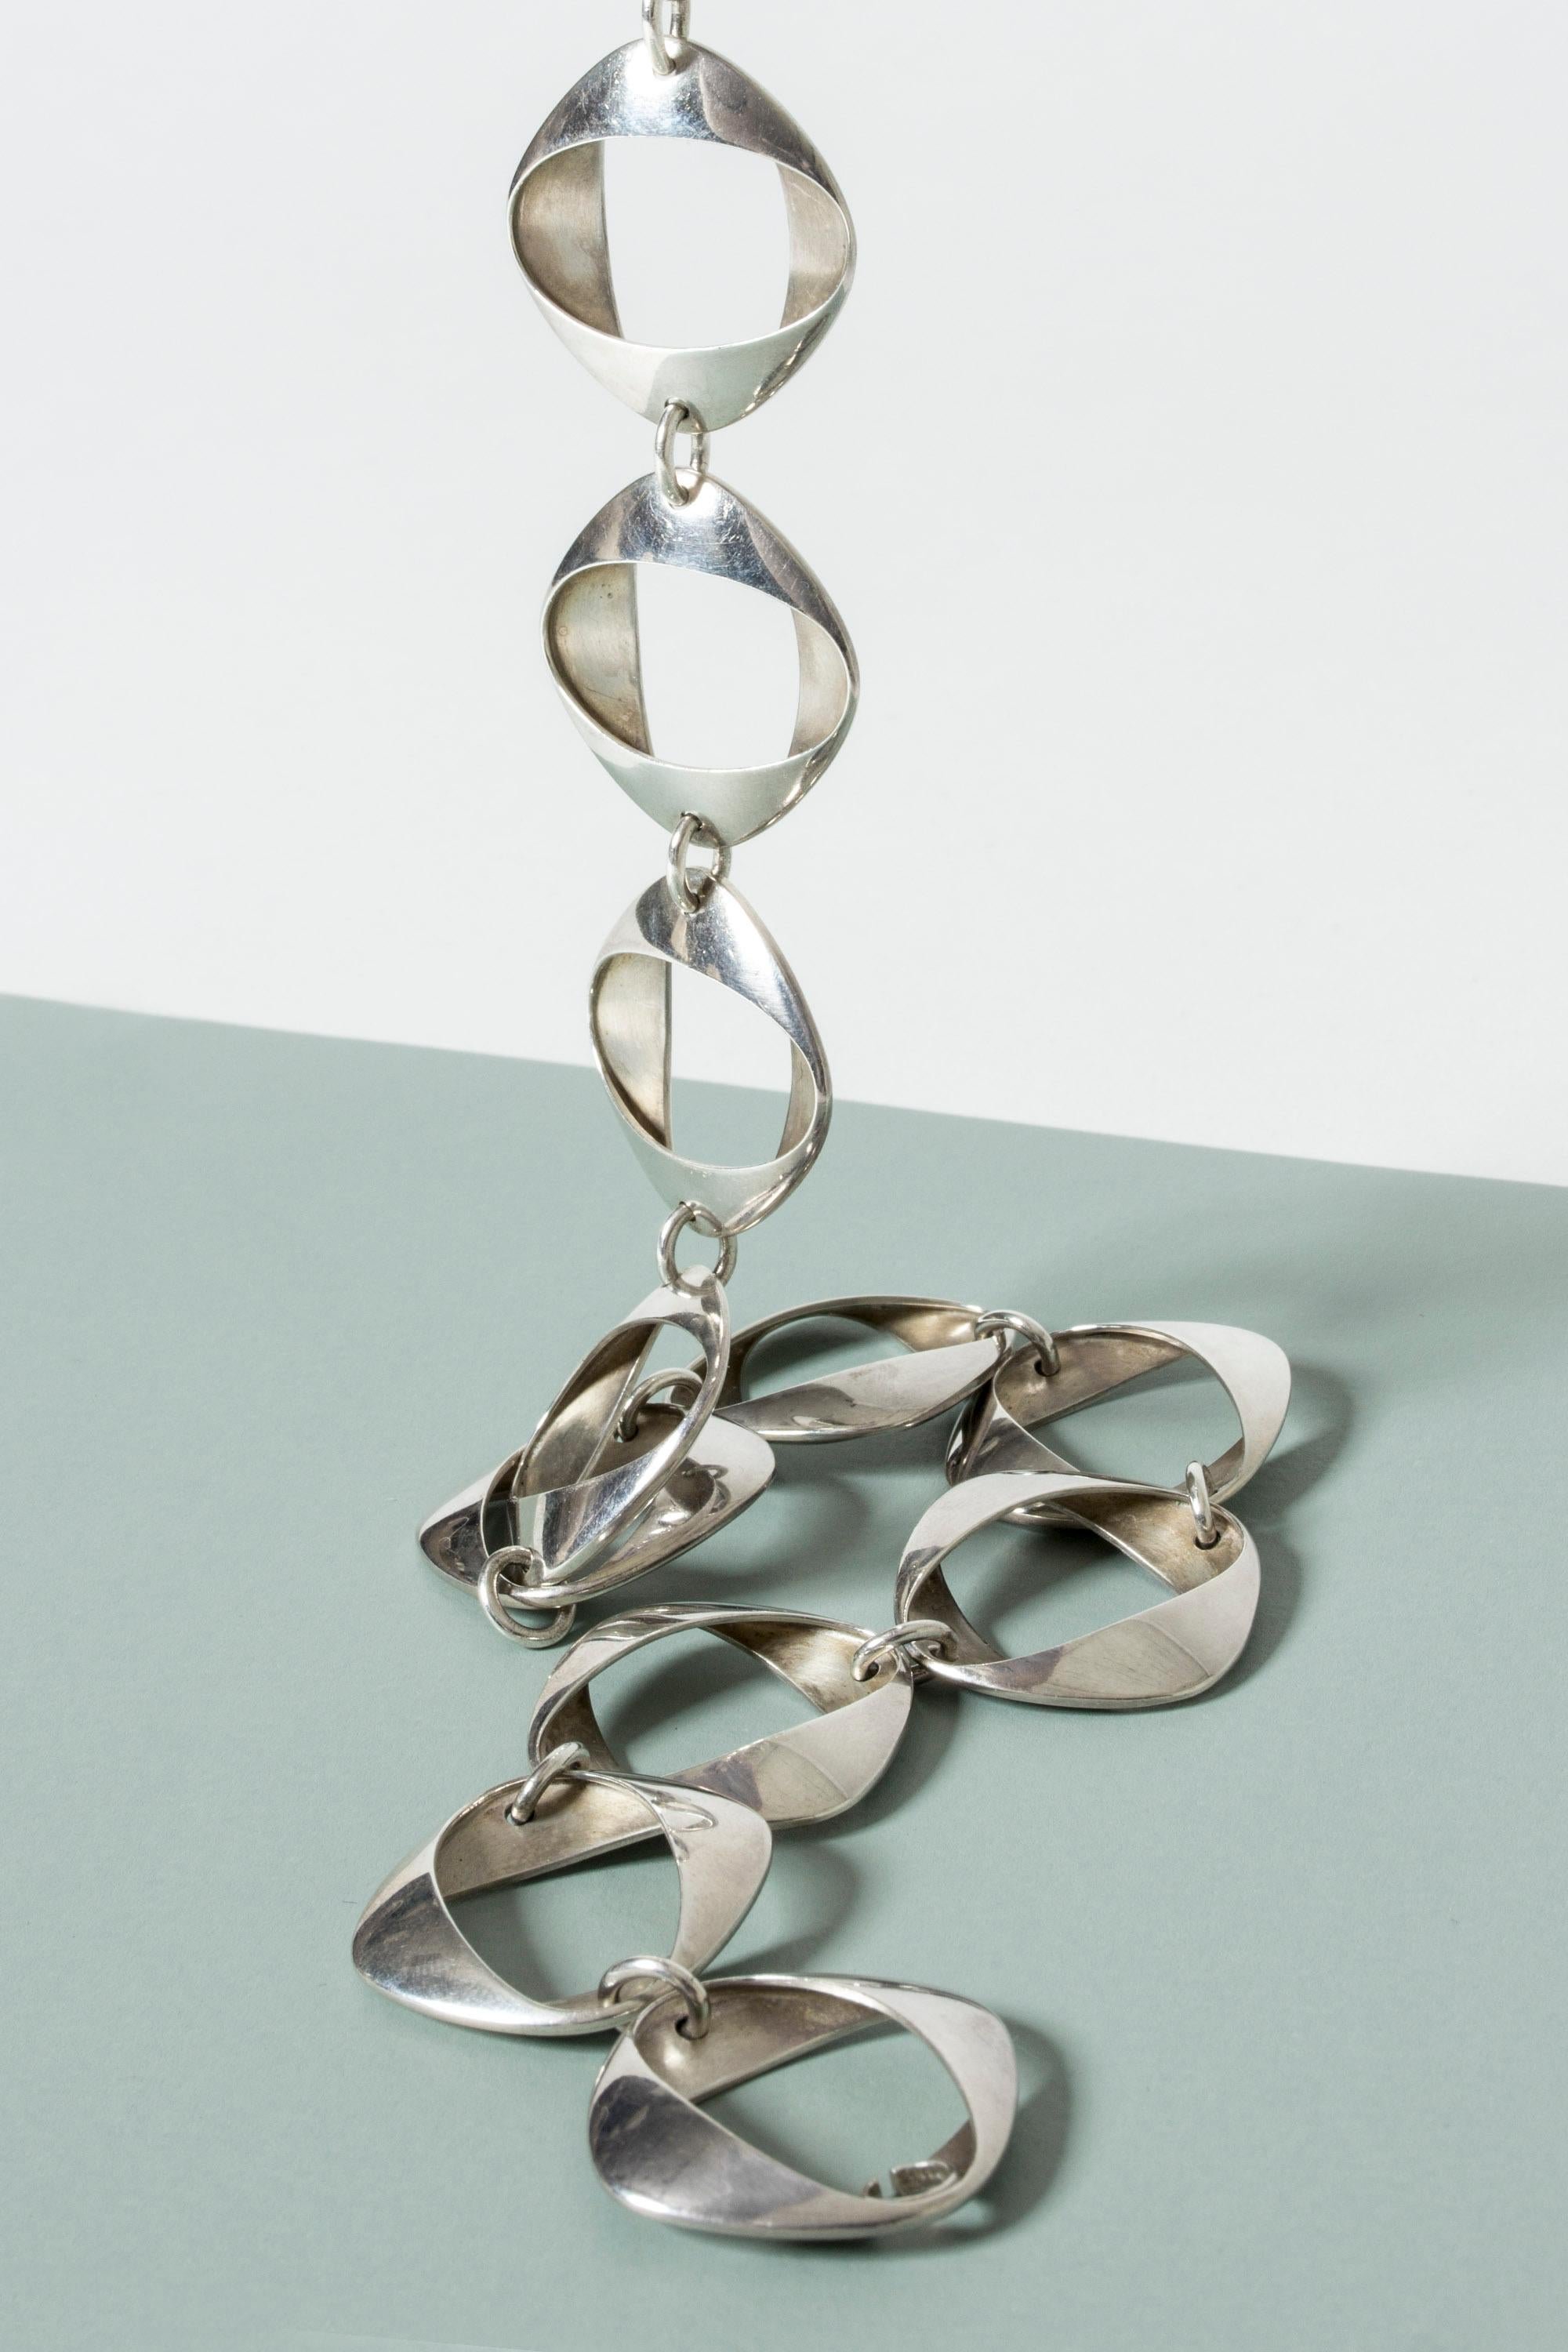 Women's or Men's Silver Collier #190 by Henning Koppel for Georg Jensen, Denmark, 1968